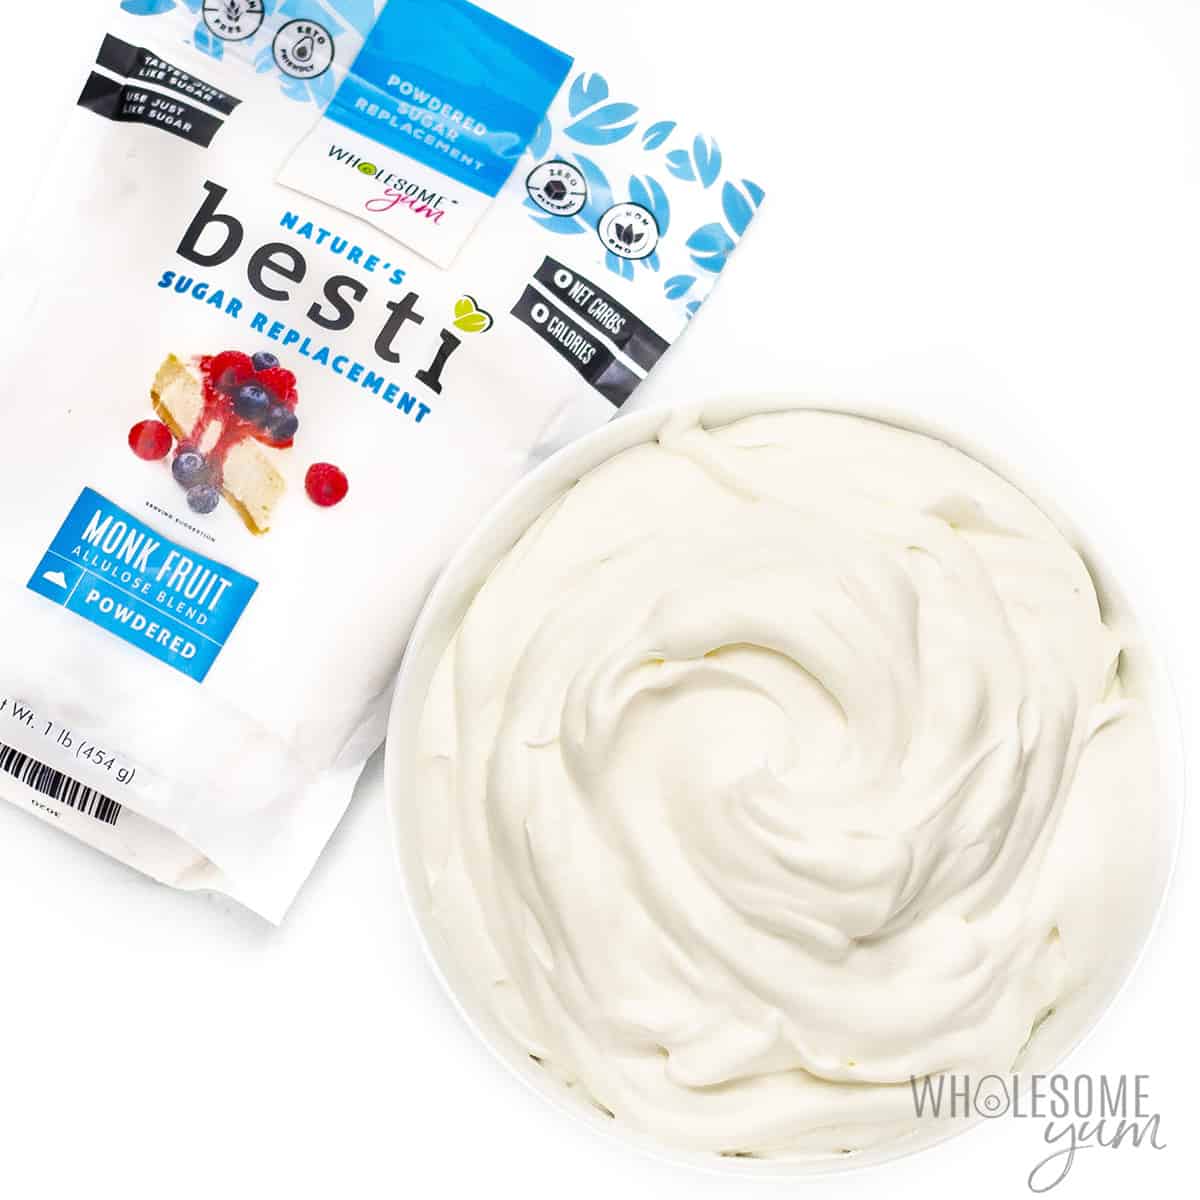 Whipped cream next to bag of powdered Besti.